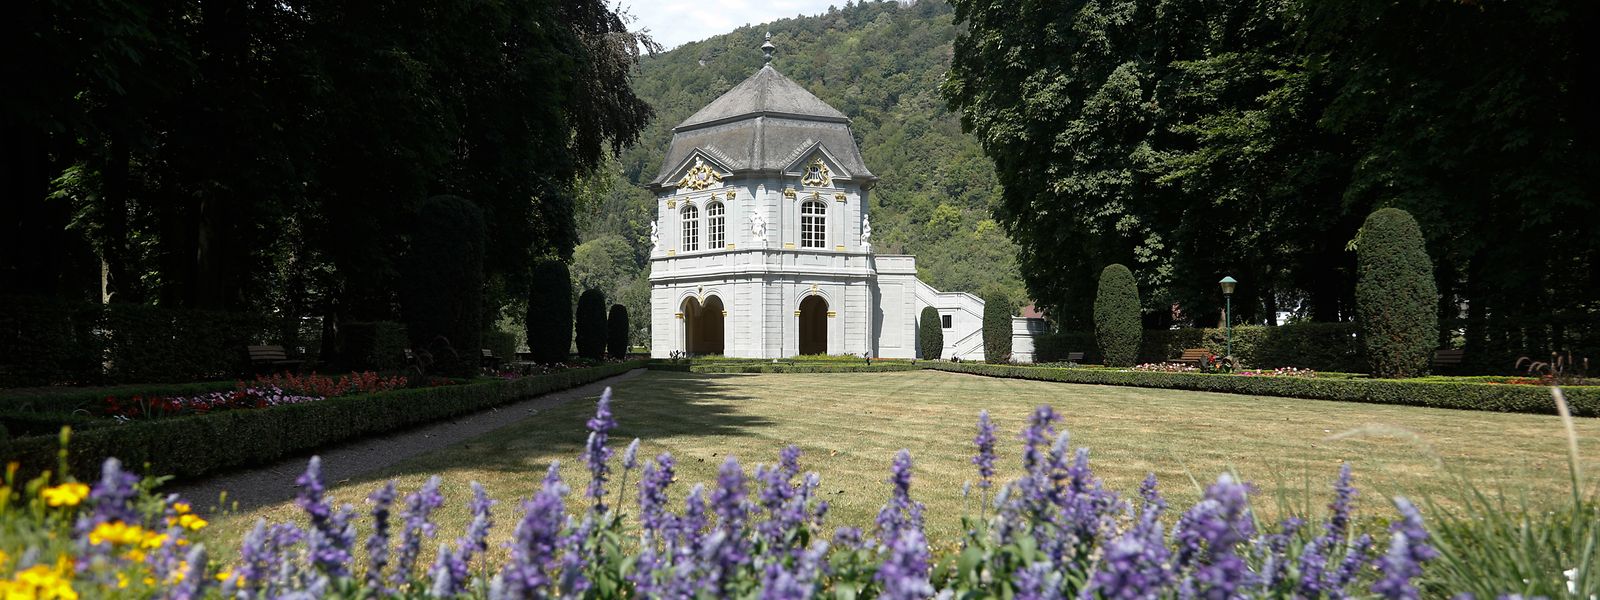 Le pavillon rococo se trouve dans l'orangerie de l'abbaye d'Echternach. Il a été construit en 1761 par Paul Mungenast.